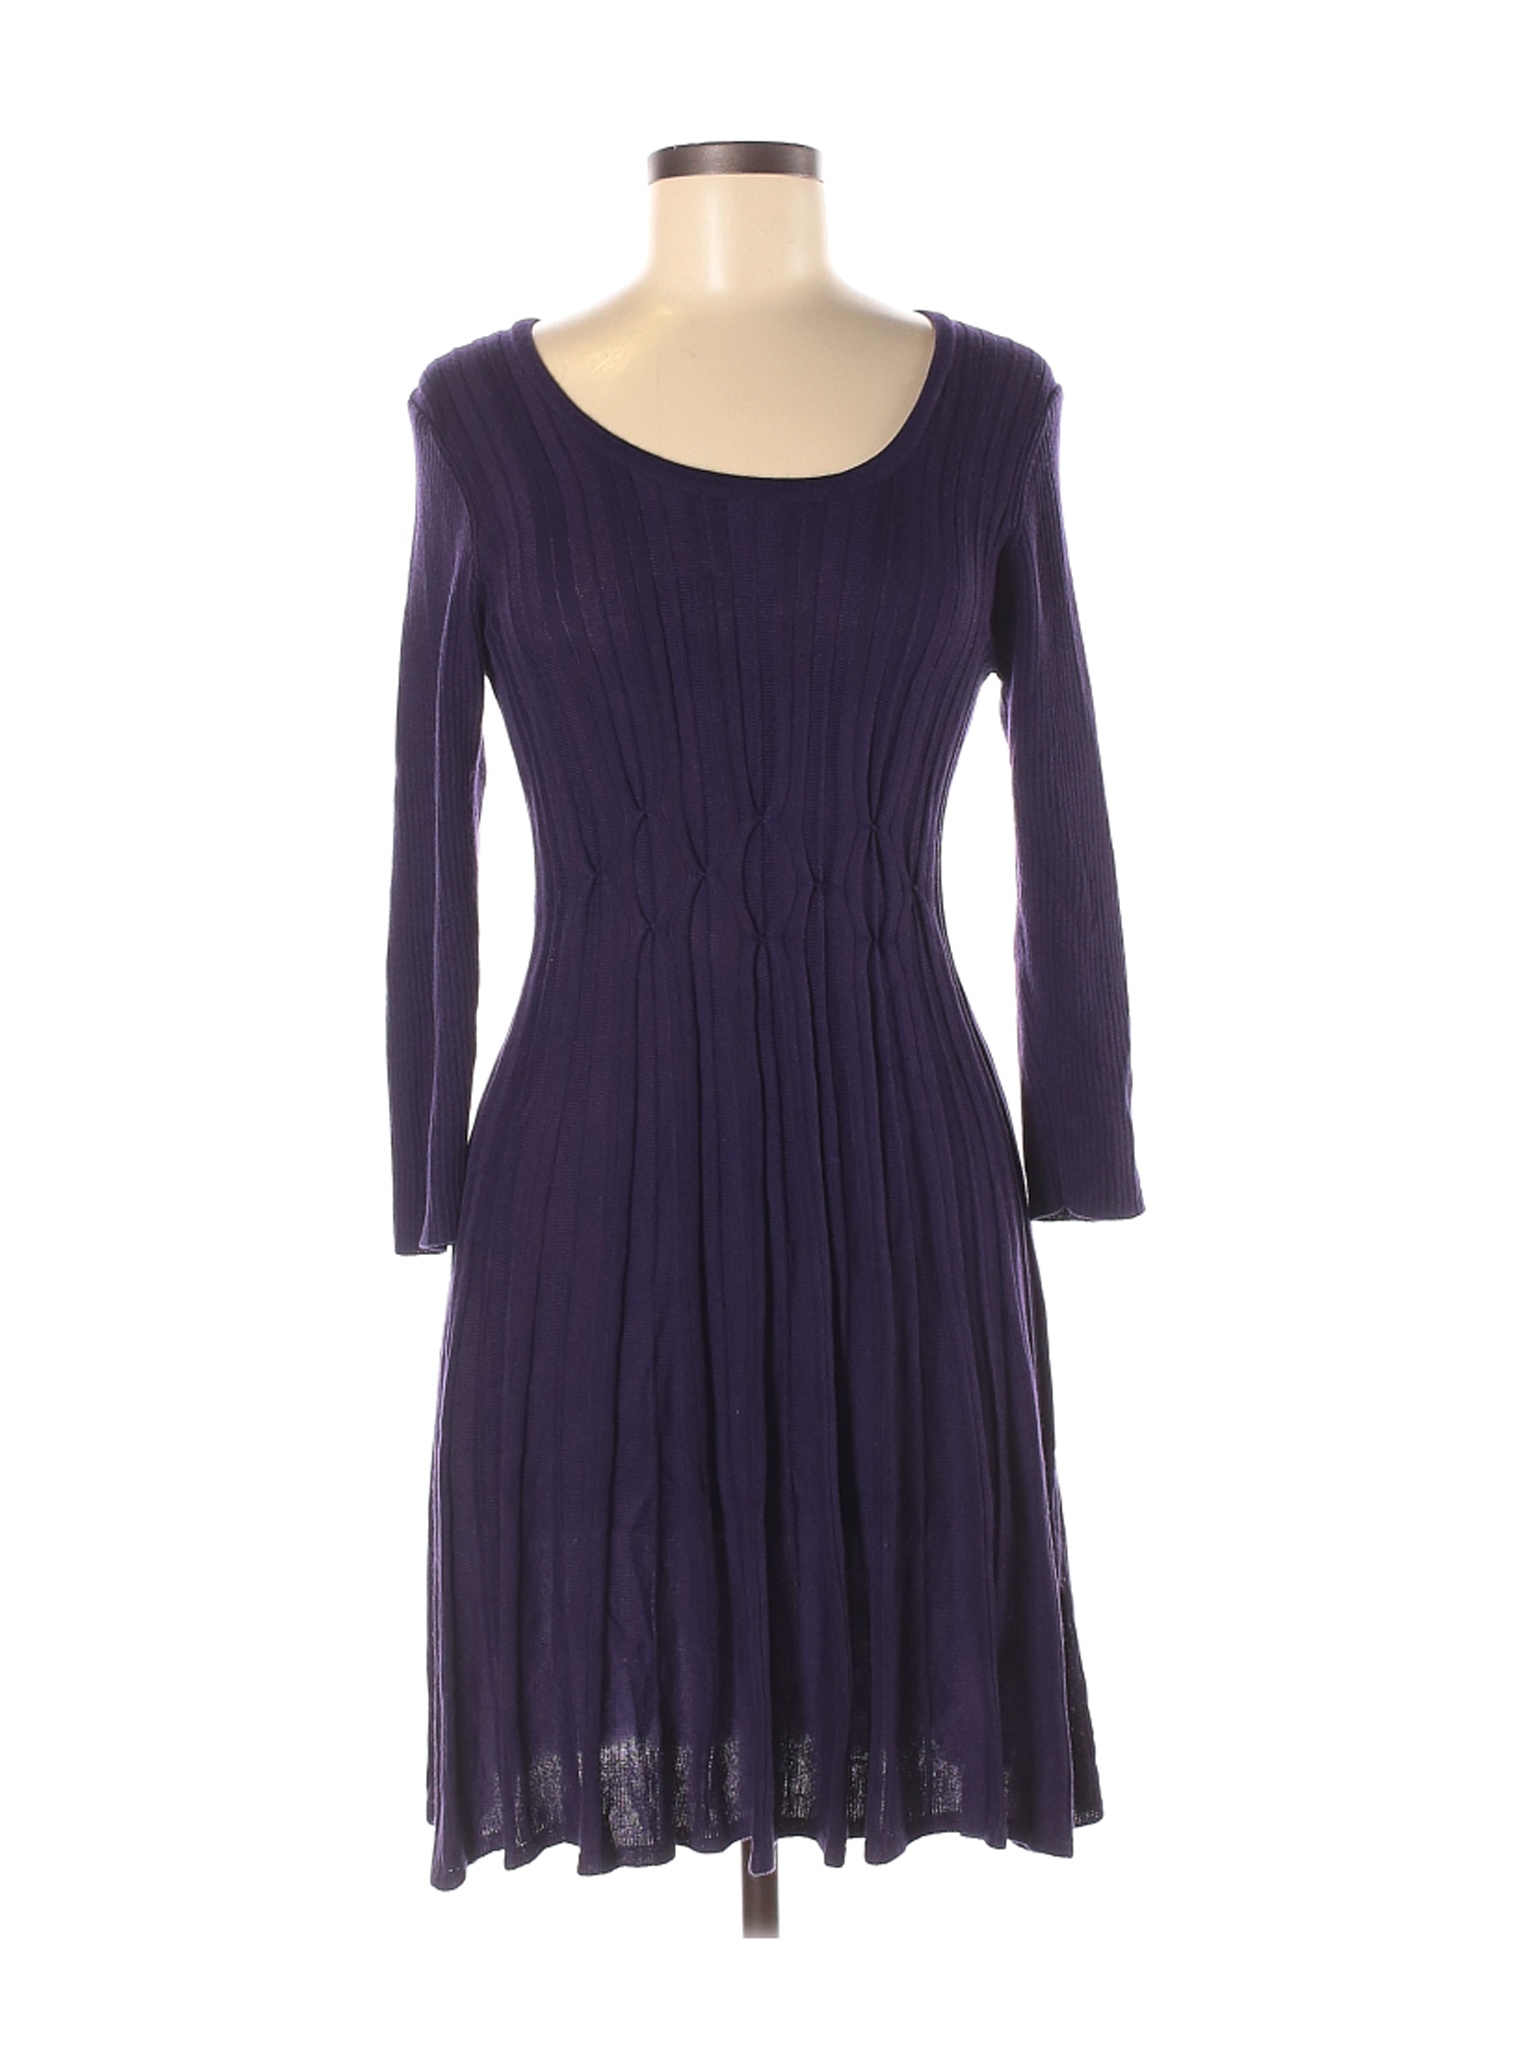 DressBarn Women Purple Casual Dress M Petites | eBay